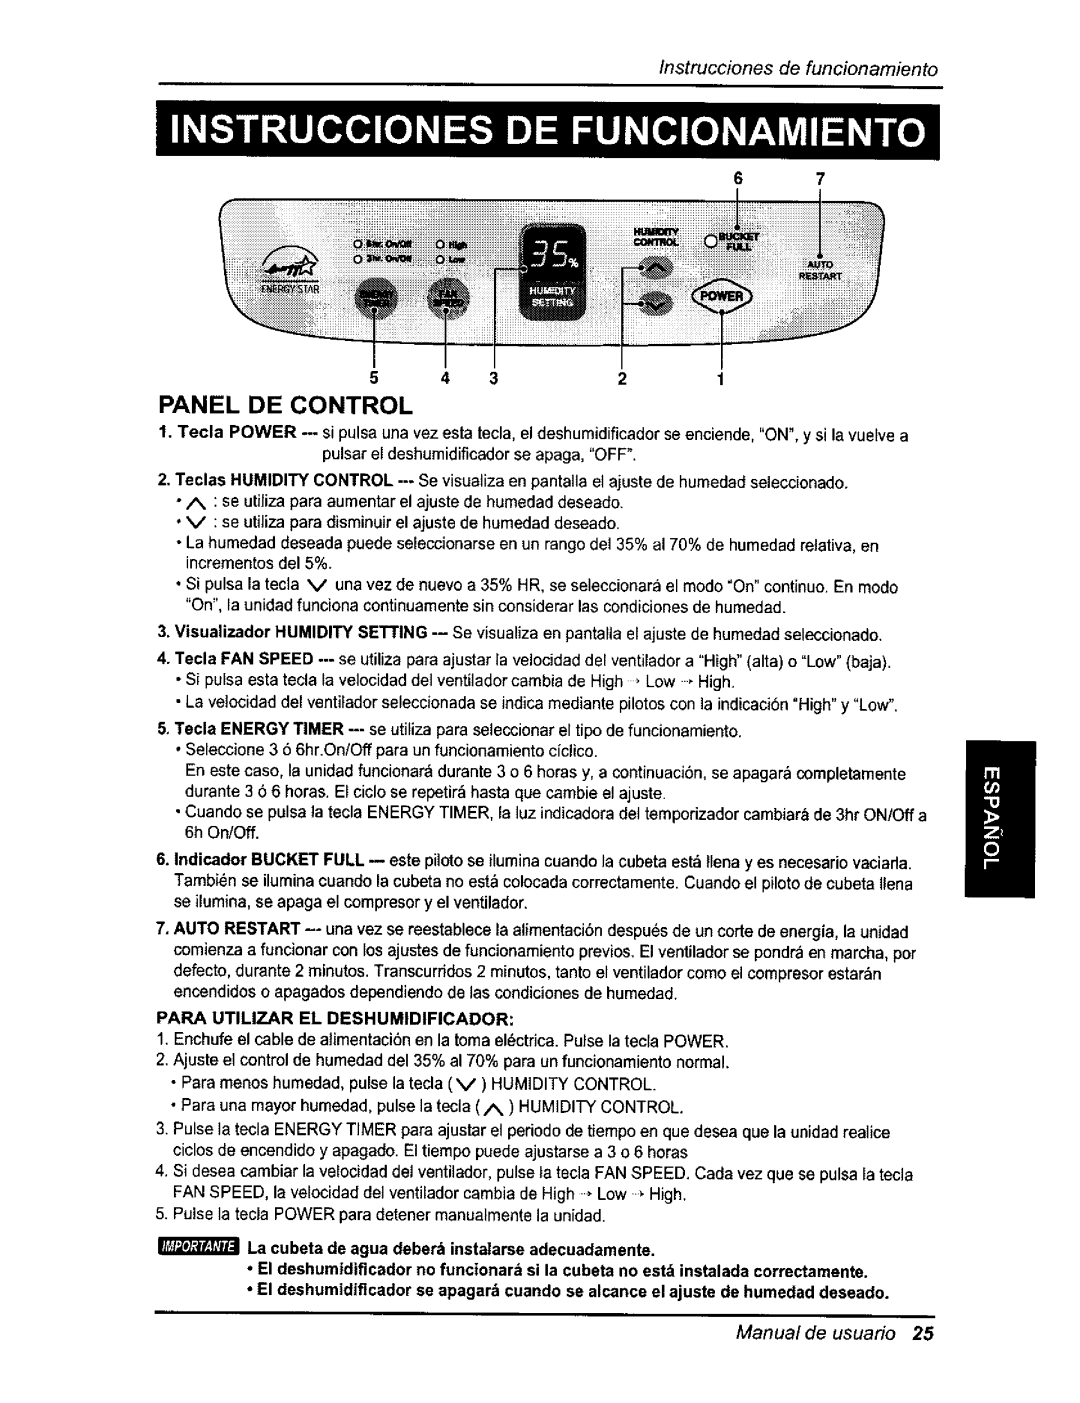 Kenmore 580.54701 owner manual Panel De Control, Instruccionesde funcionamiento, Manual de usuario 